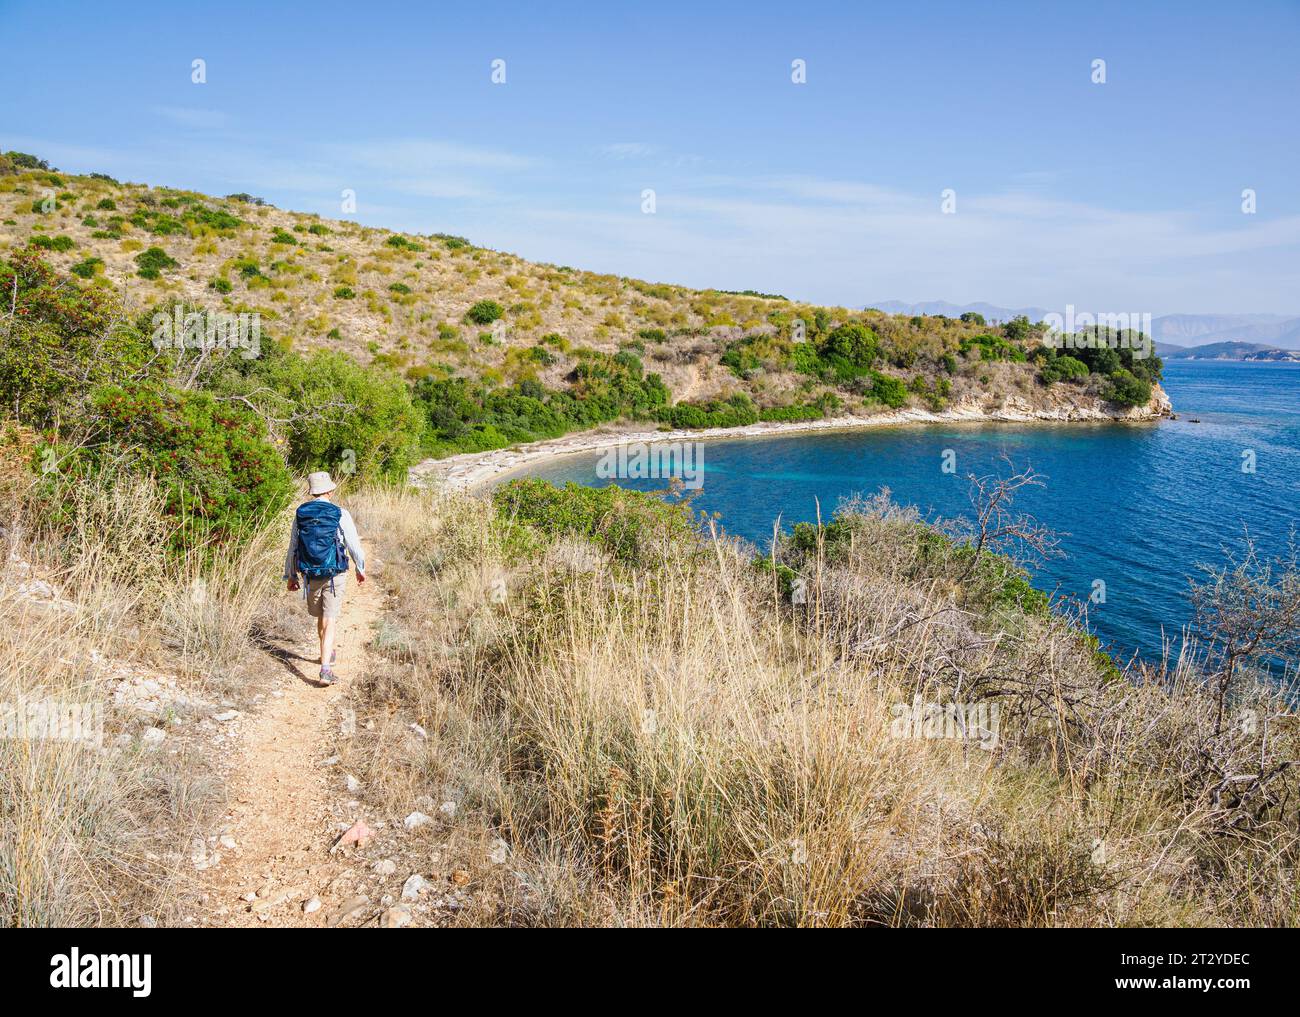 Camminando lungo tranquille baie e insenature della costa nord-orientale di Corfù, nelle Isole Ionie della Grecia Foto Stock